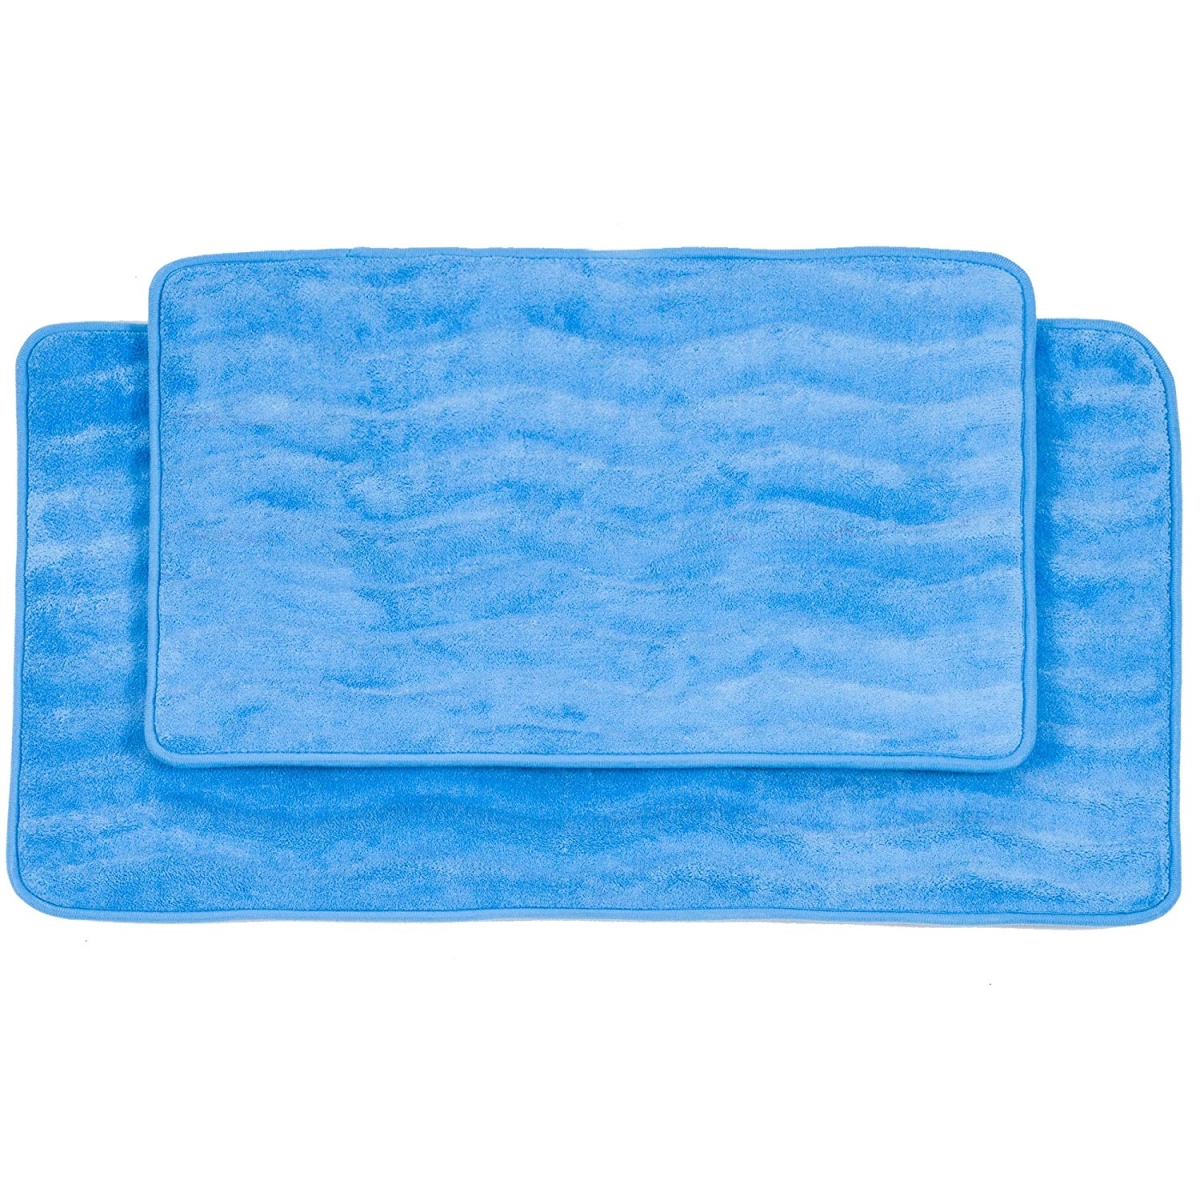 67a-26563 2 Piece Memory Foam Bath Mat Set, Blue